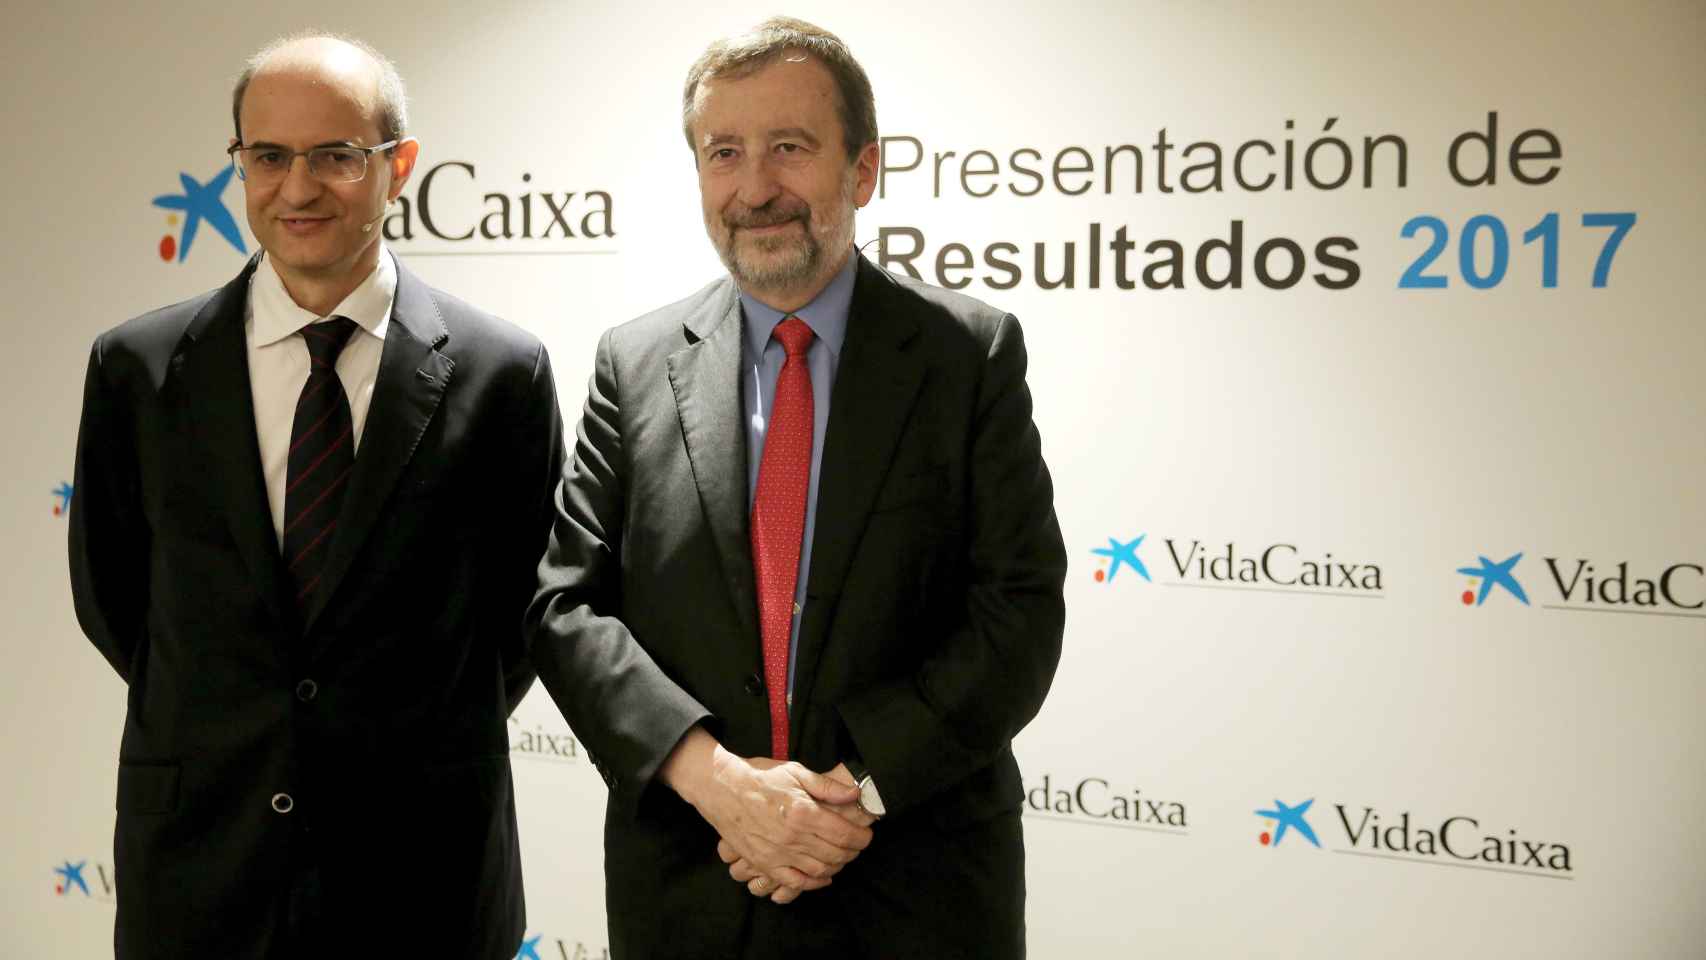 Javier Valle, director general de Vidacaixa, y Tomás Muniesa, consejero delegado